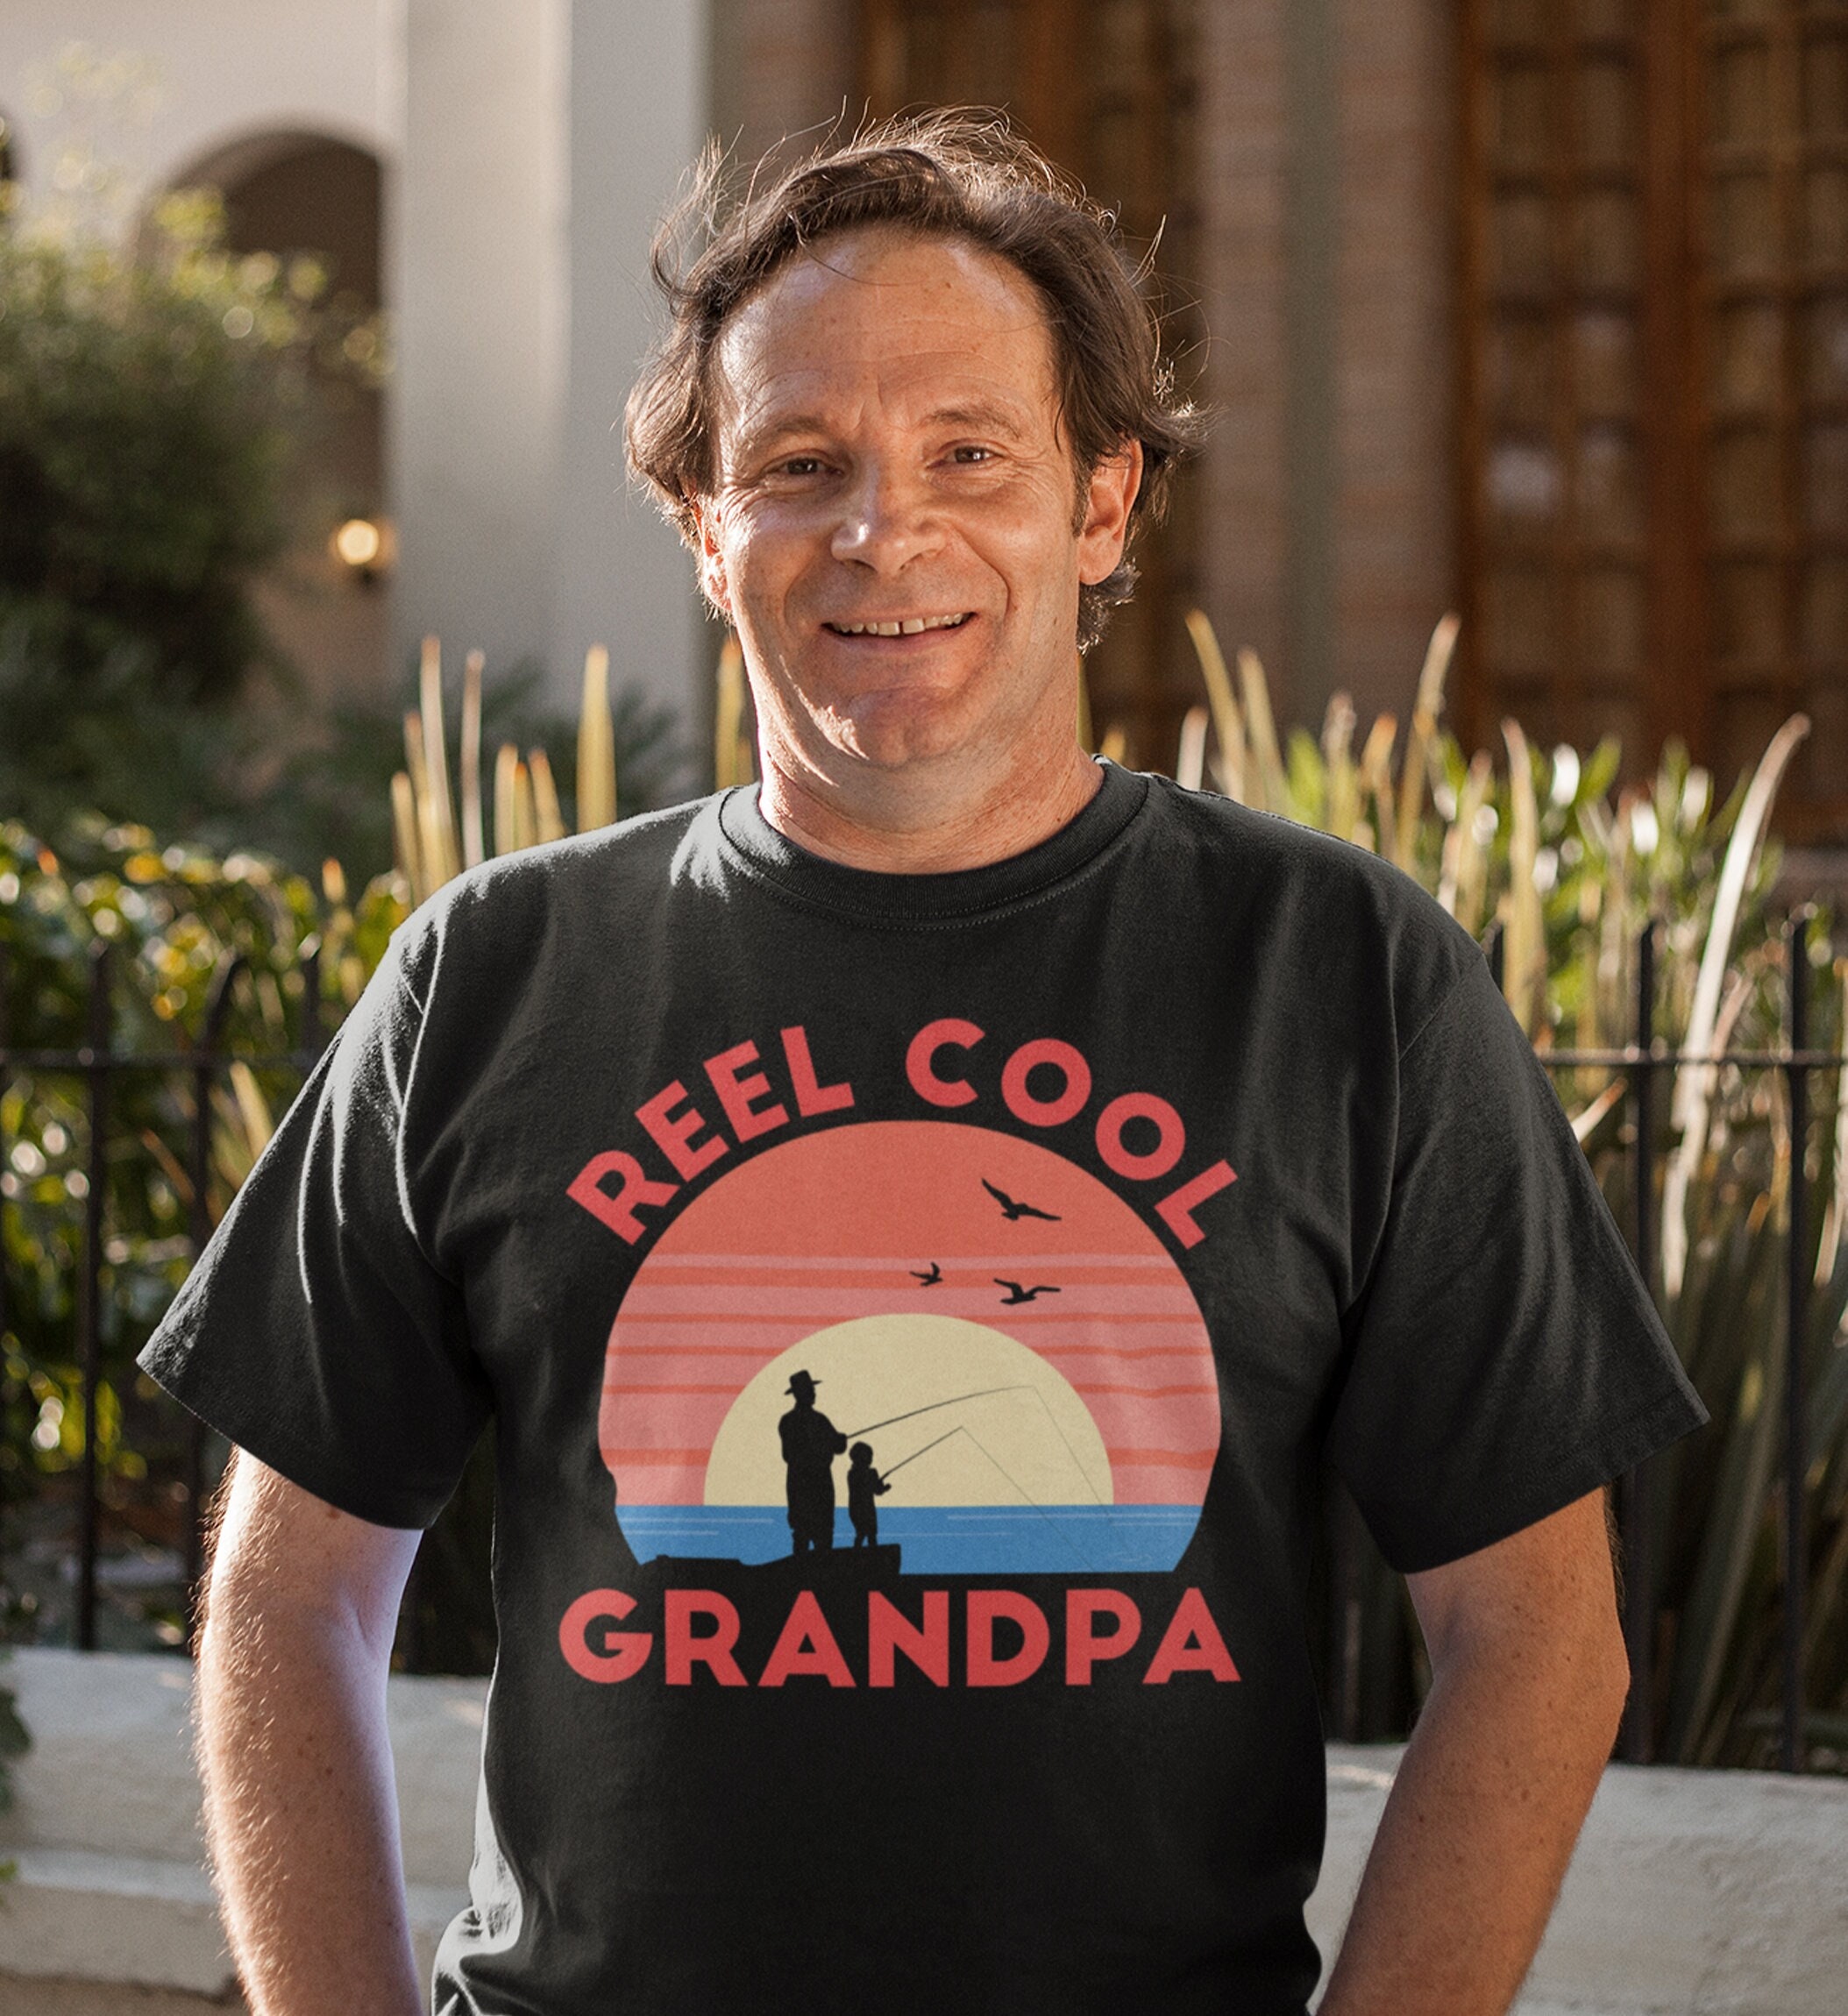 Reel Cool Grandpa Vintage Fishing Shirt, Fishing Grandpa, New